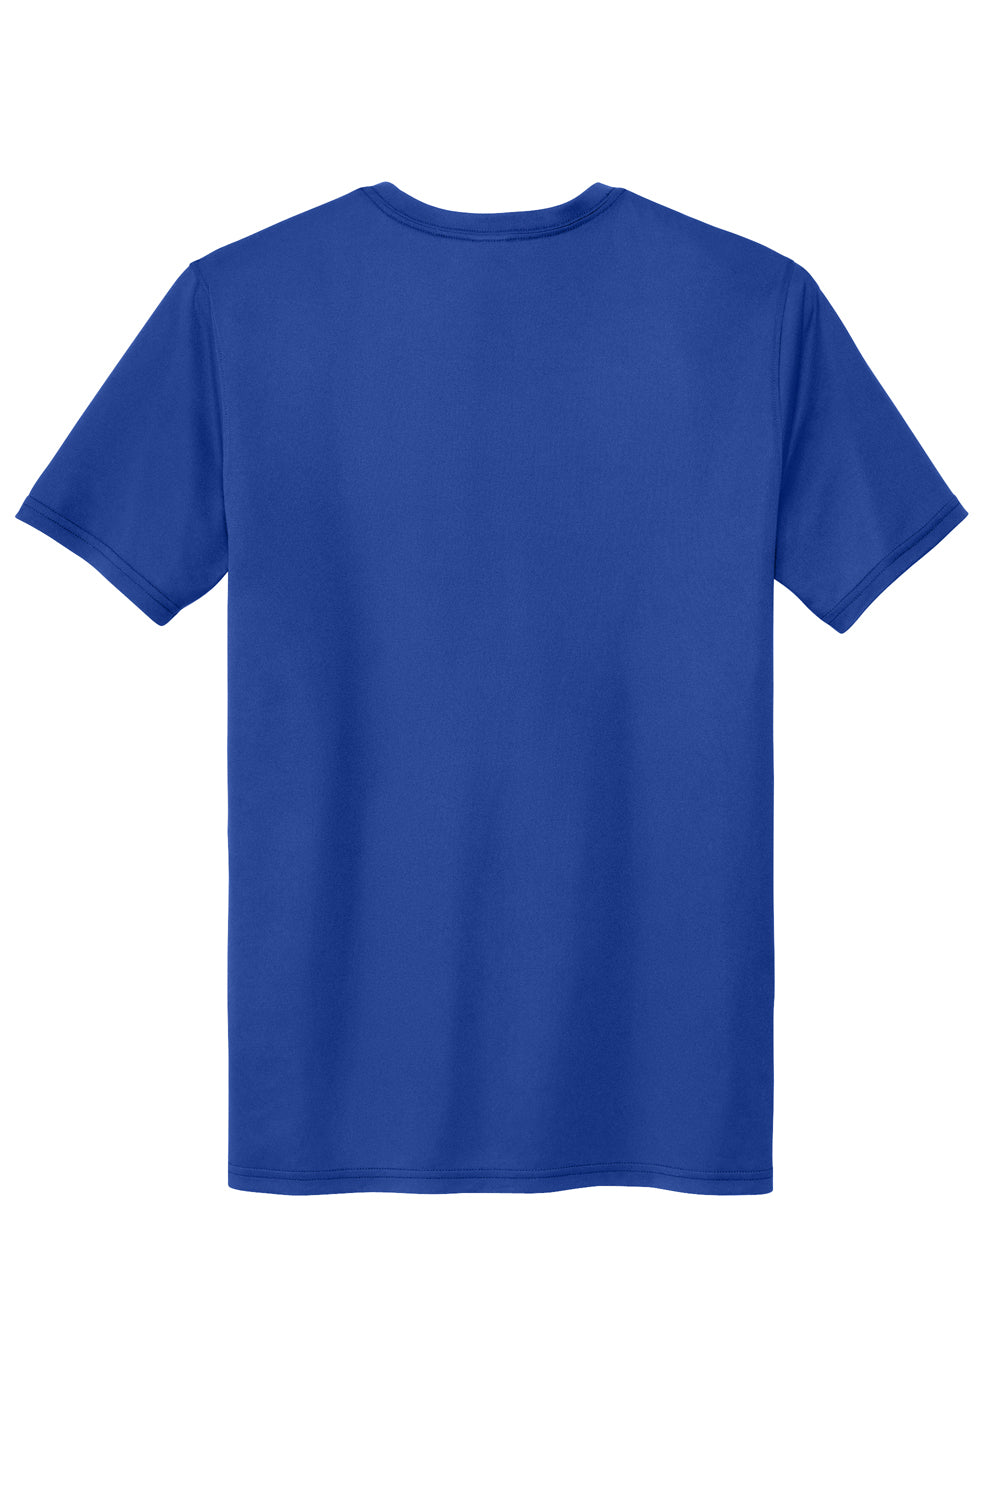 Sport-Tek ST760 Echo Short Sleeve Crewneck T-Shirt True Royal Blue Flat Back